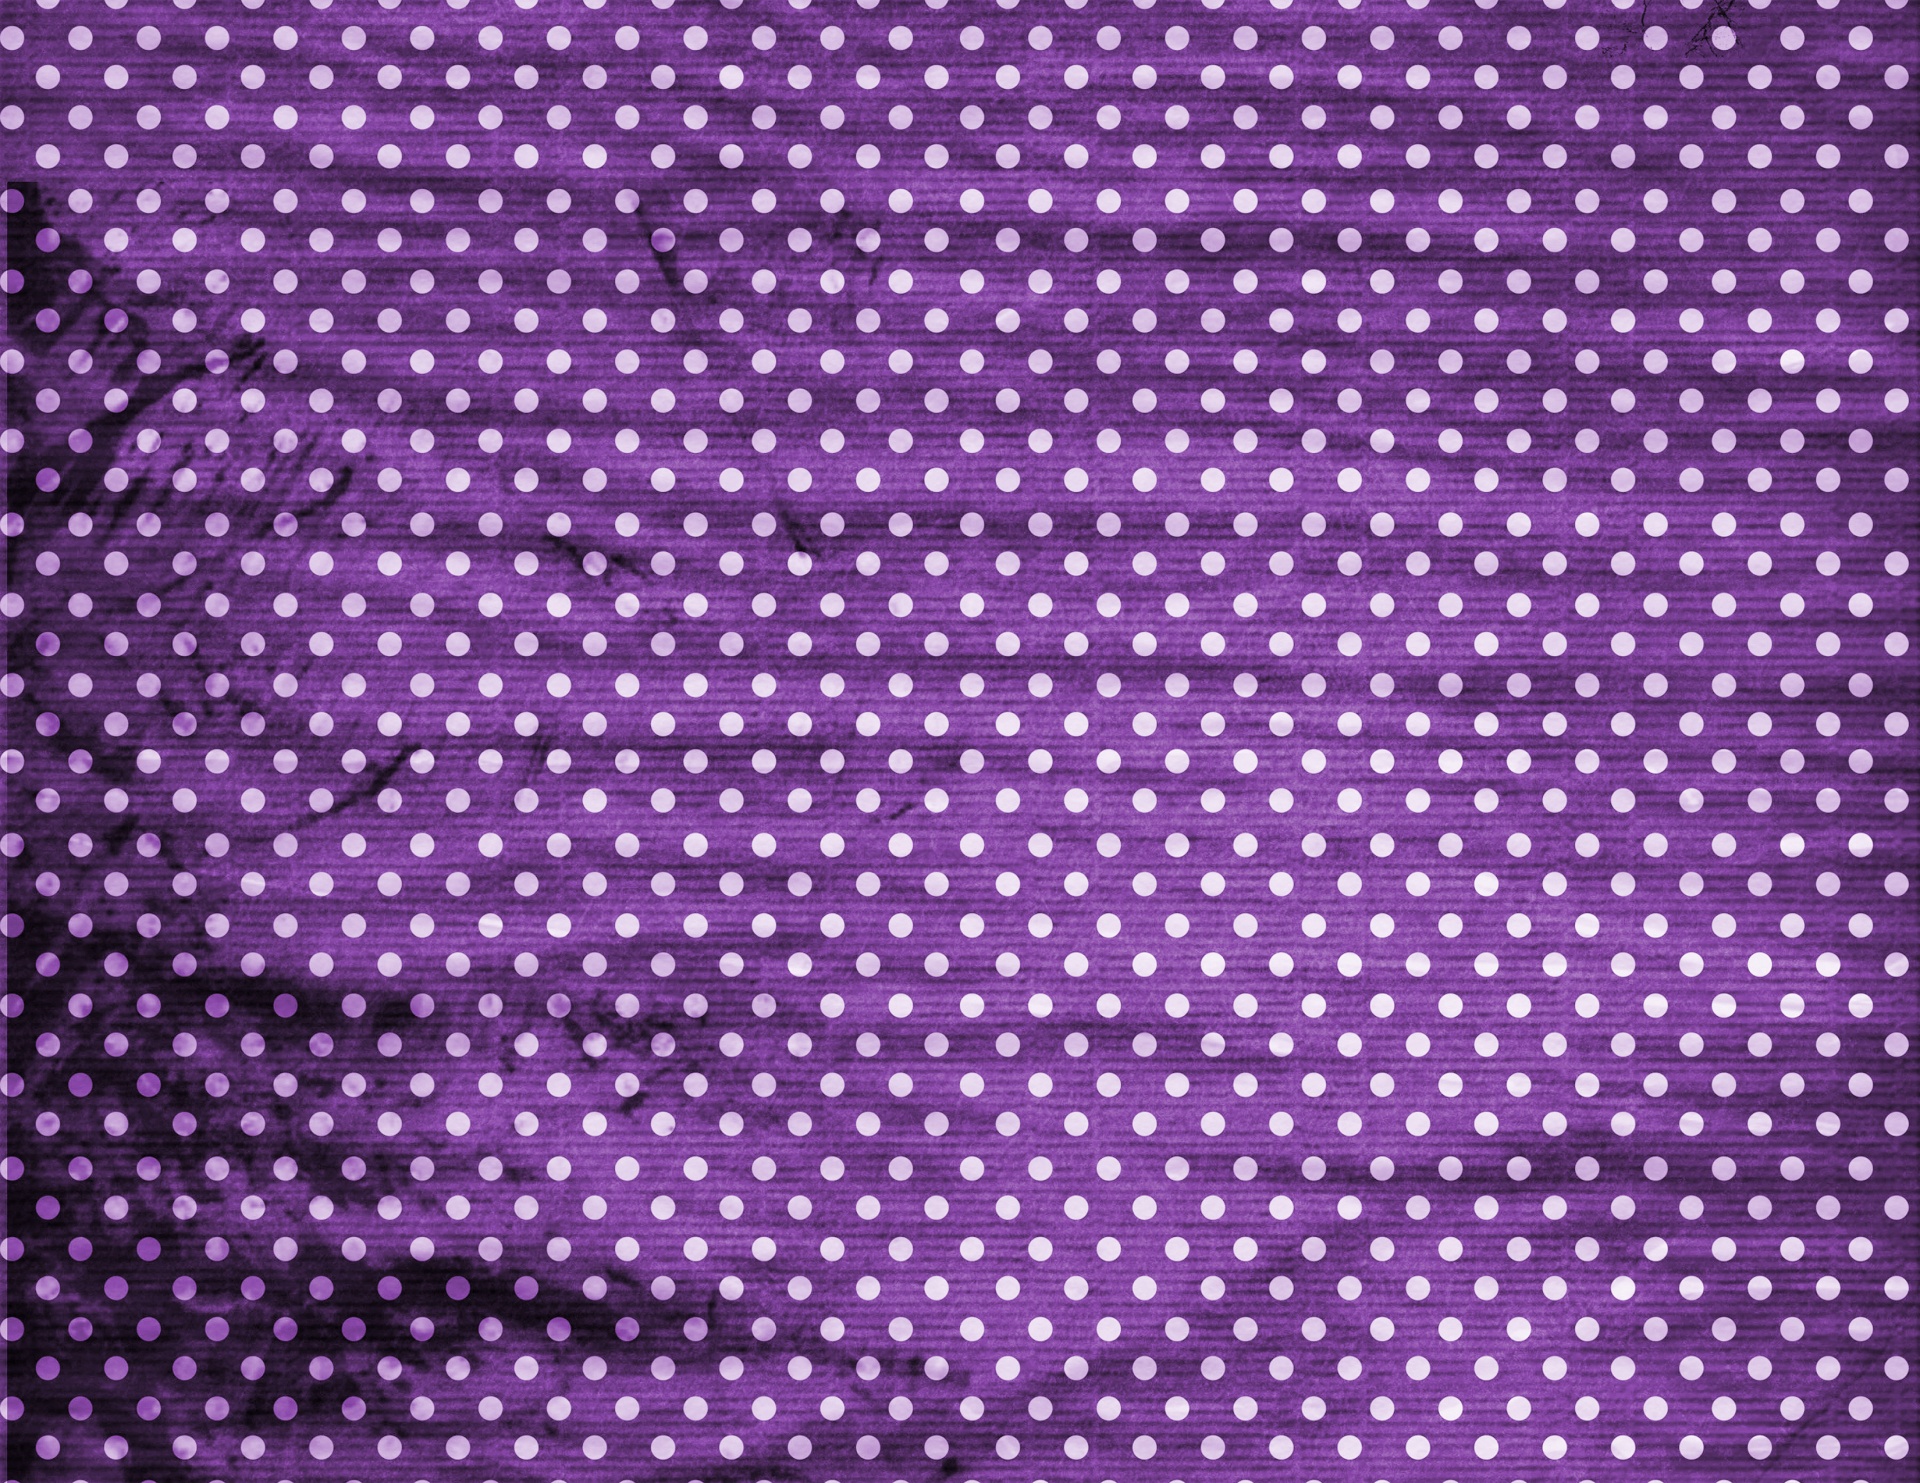 Dark Purple Background With Dots